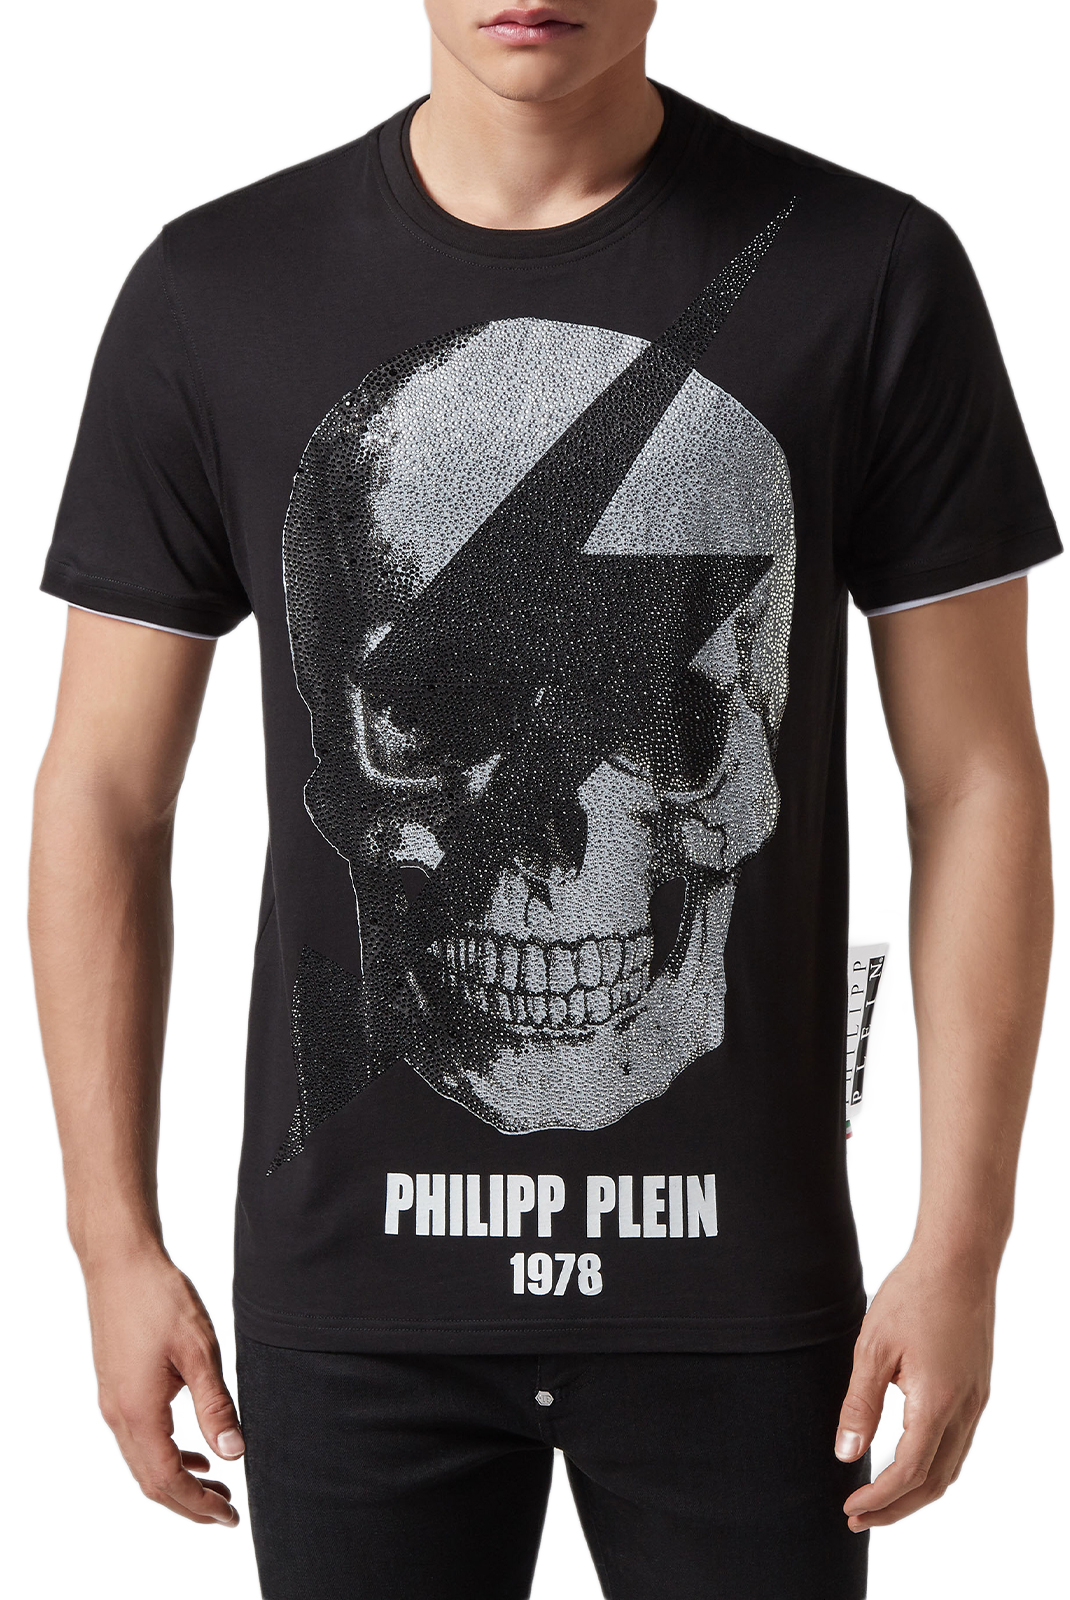 Philipp Plein Tee-shirt Noir Mtk3332 Pjy002n